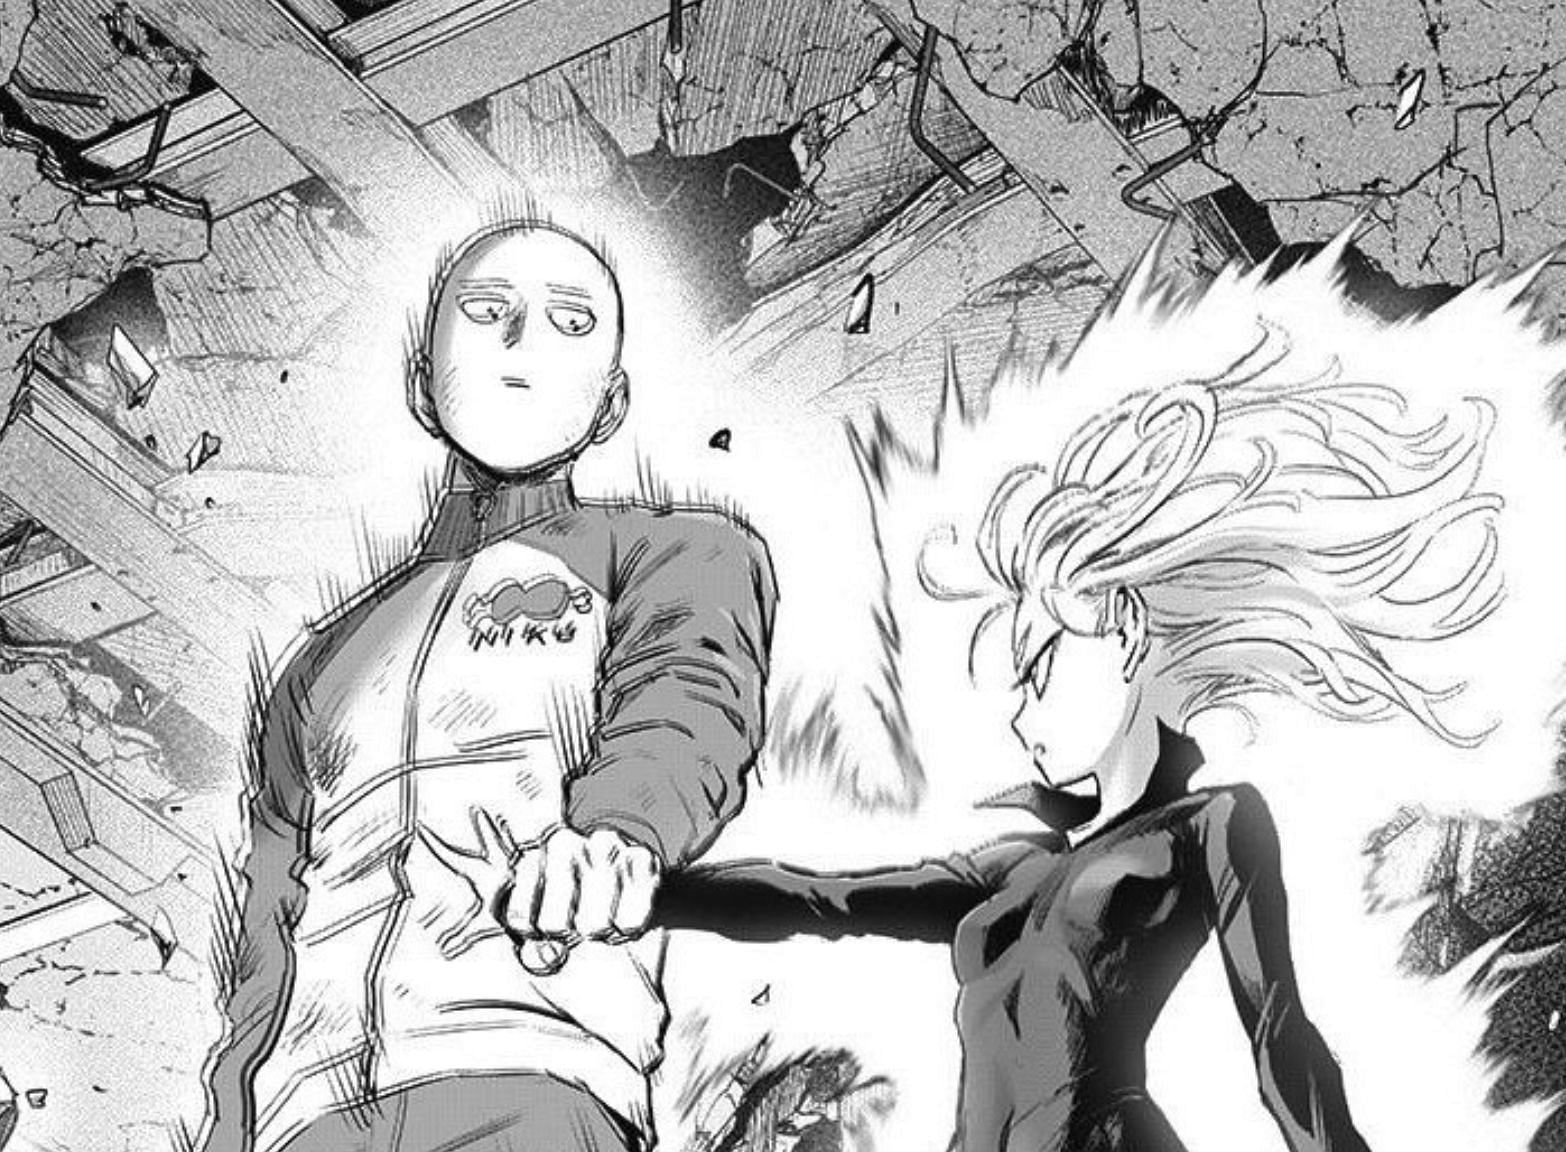 Saitama stopping Tatsumaki in One Punch Man manga (Image via ONE, Yusuke Murata)